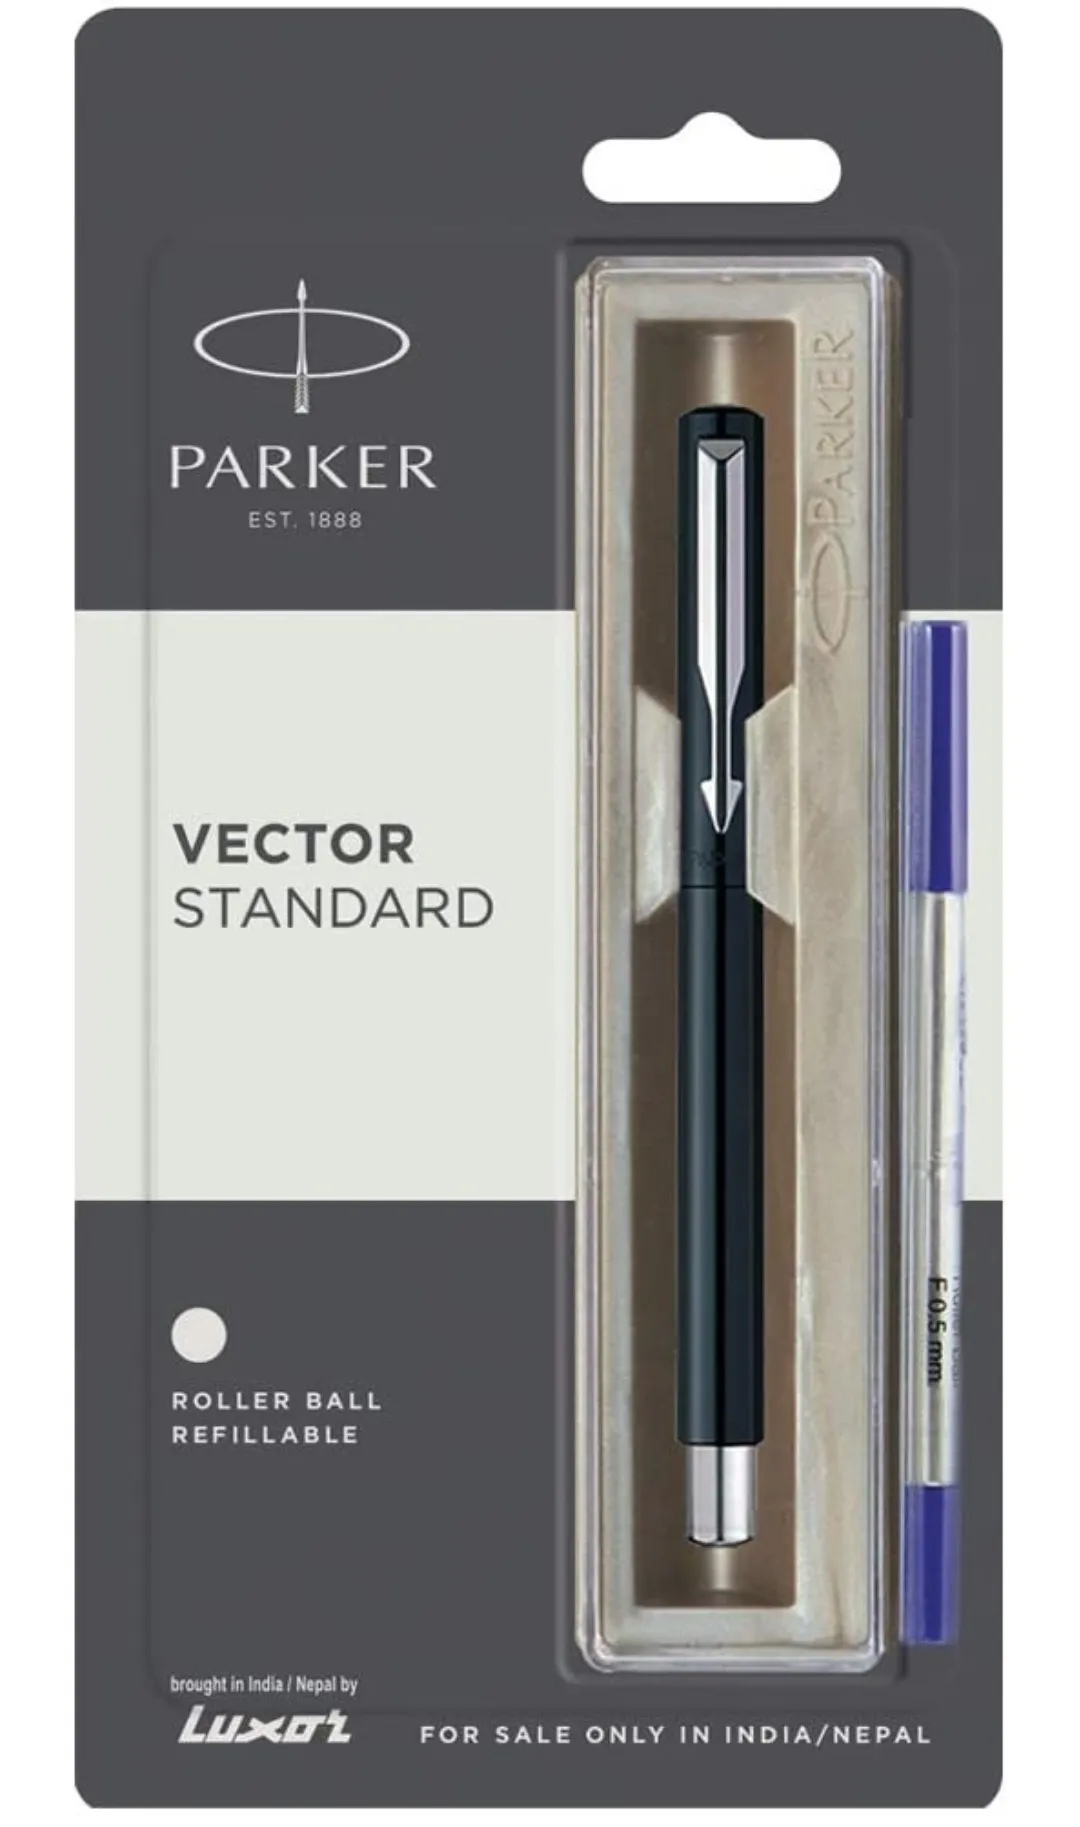 Parker Vector Standard Chrome Trim Roller Ball Pen (Pack of 1) Black Body